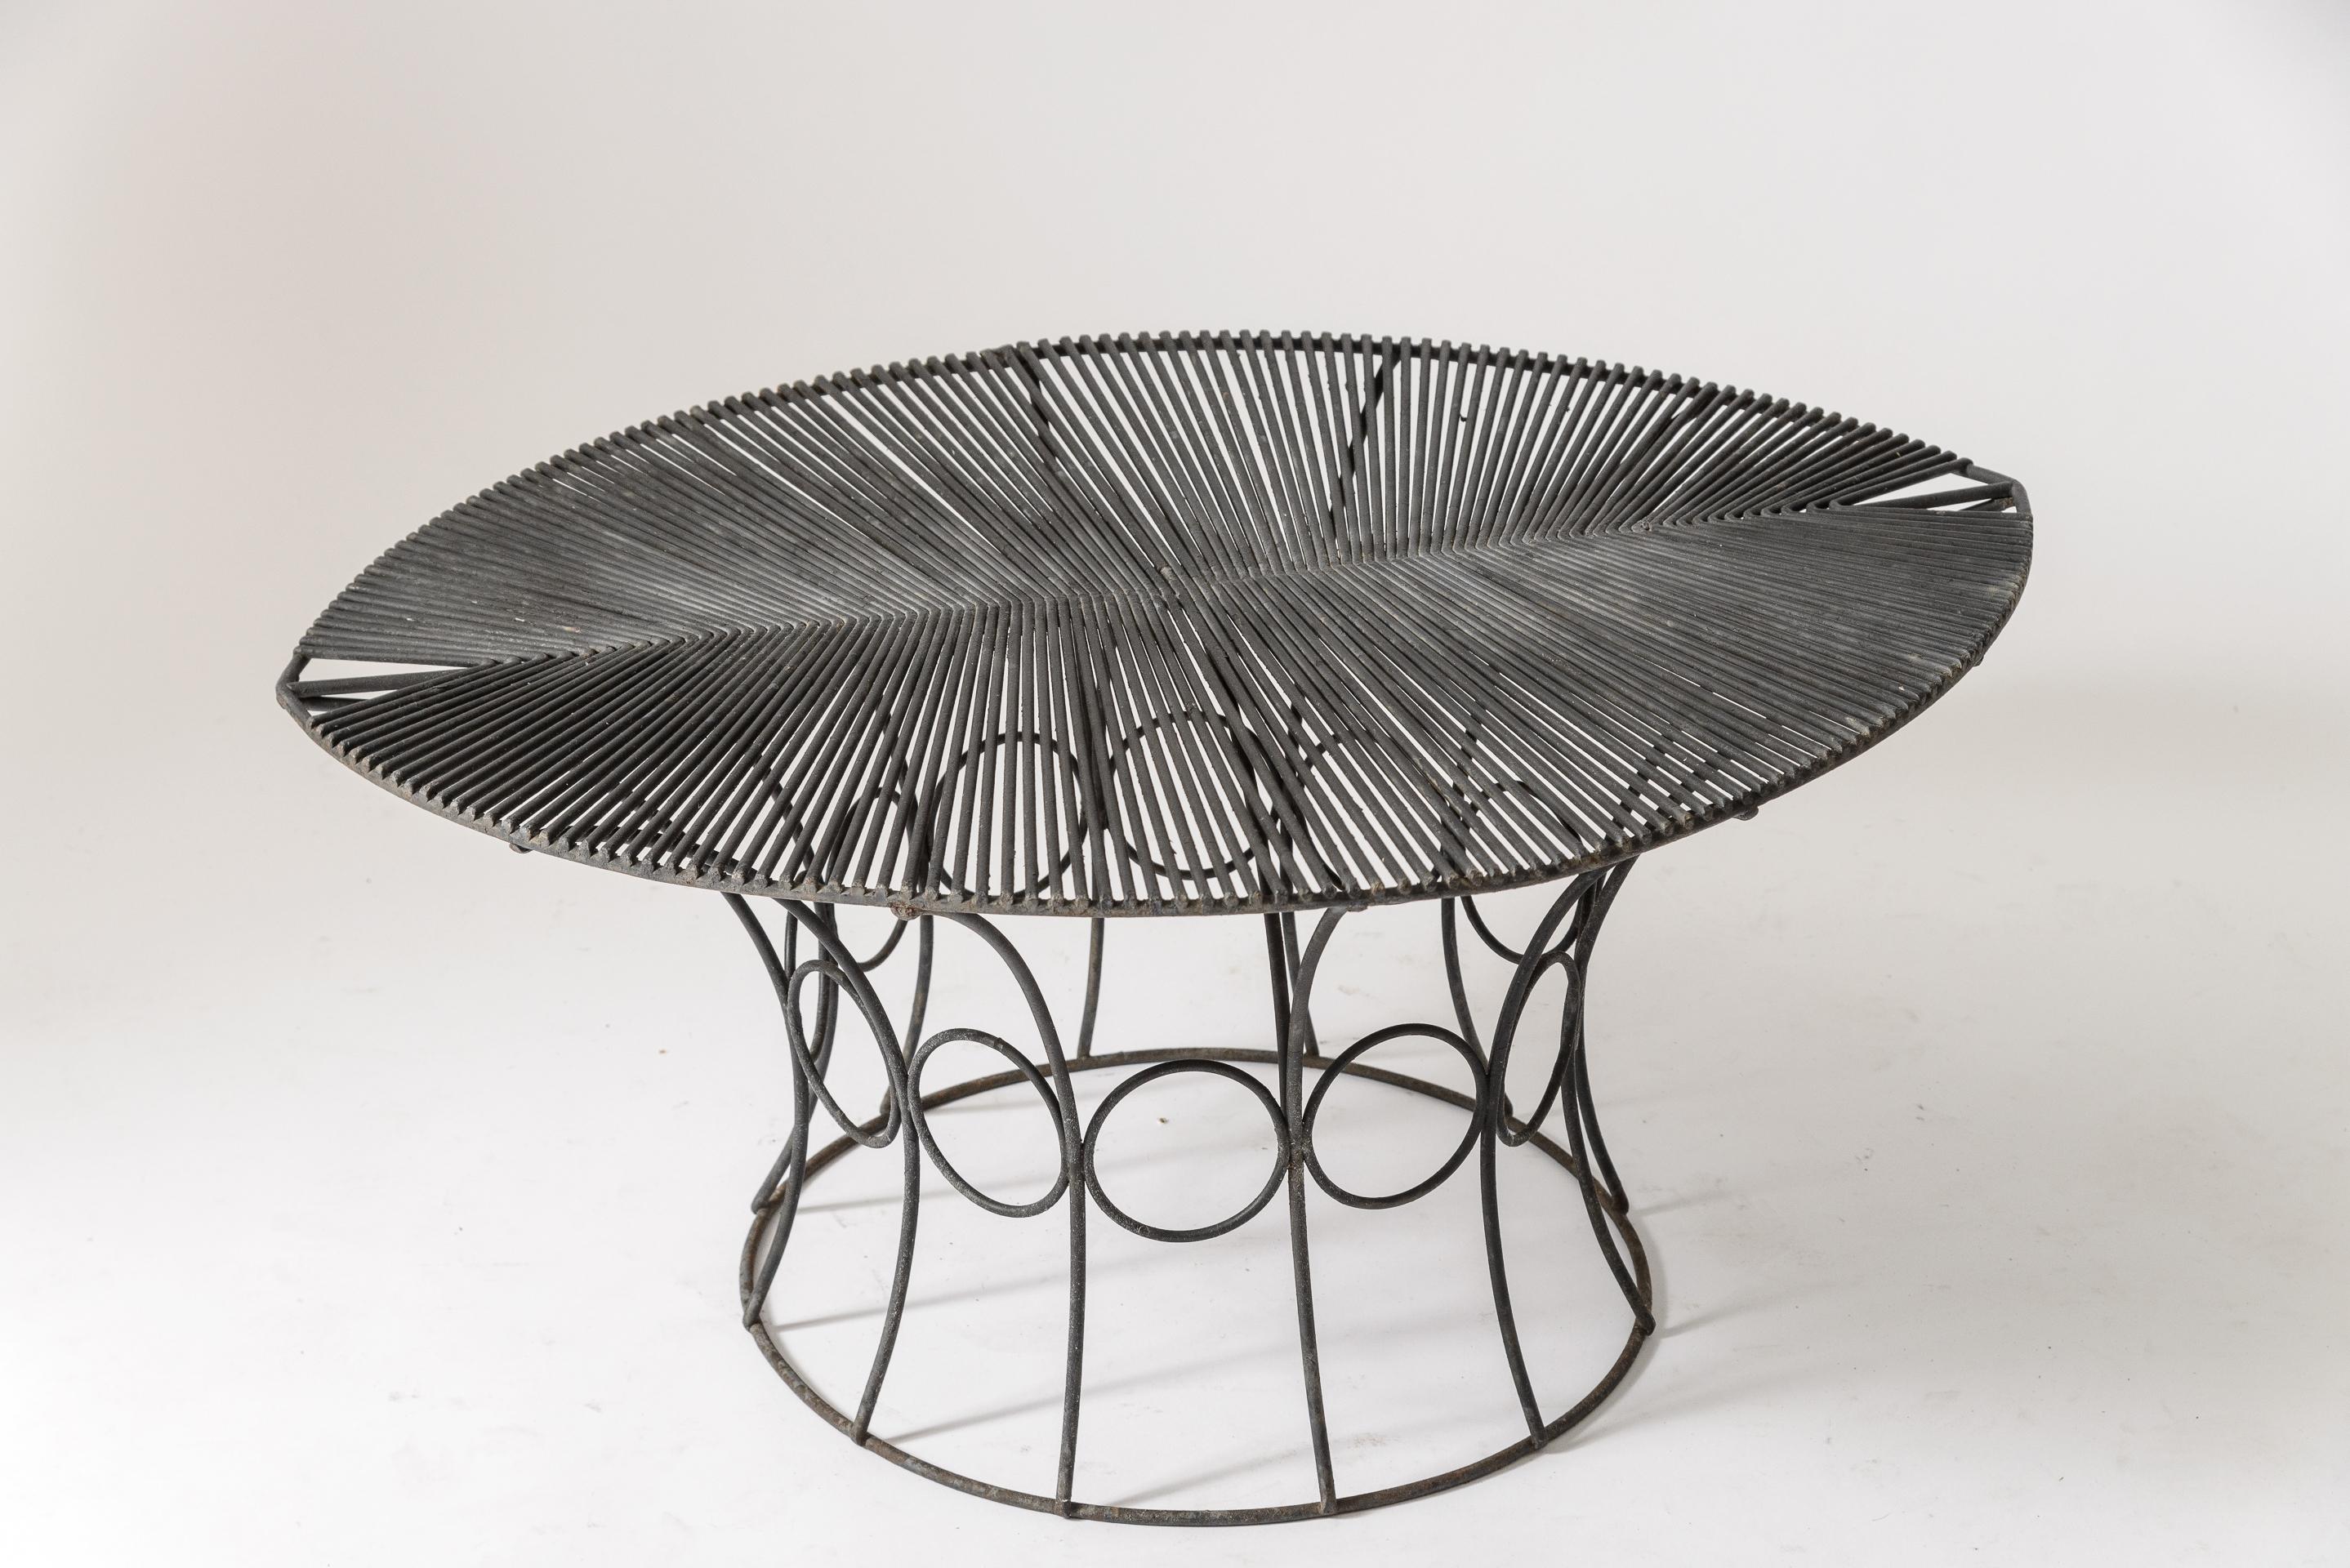 John Risley Leaf -Shaped Side Table
Original Black surface
Some oxidation
enameled steel